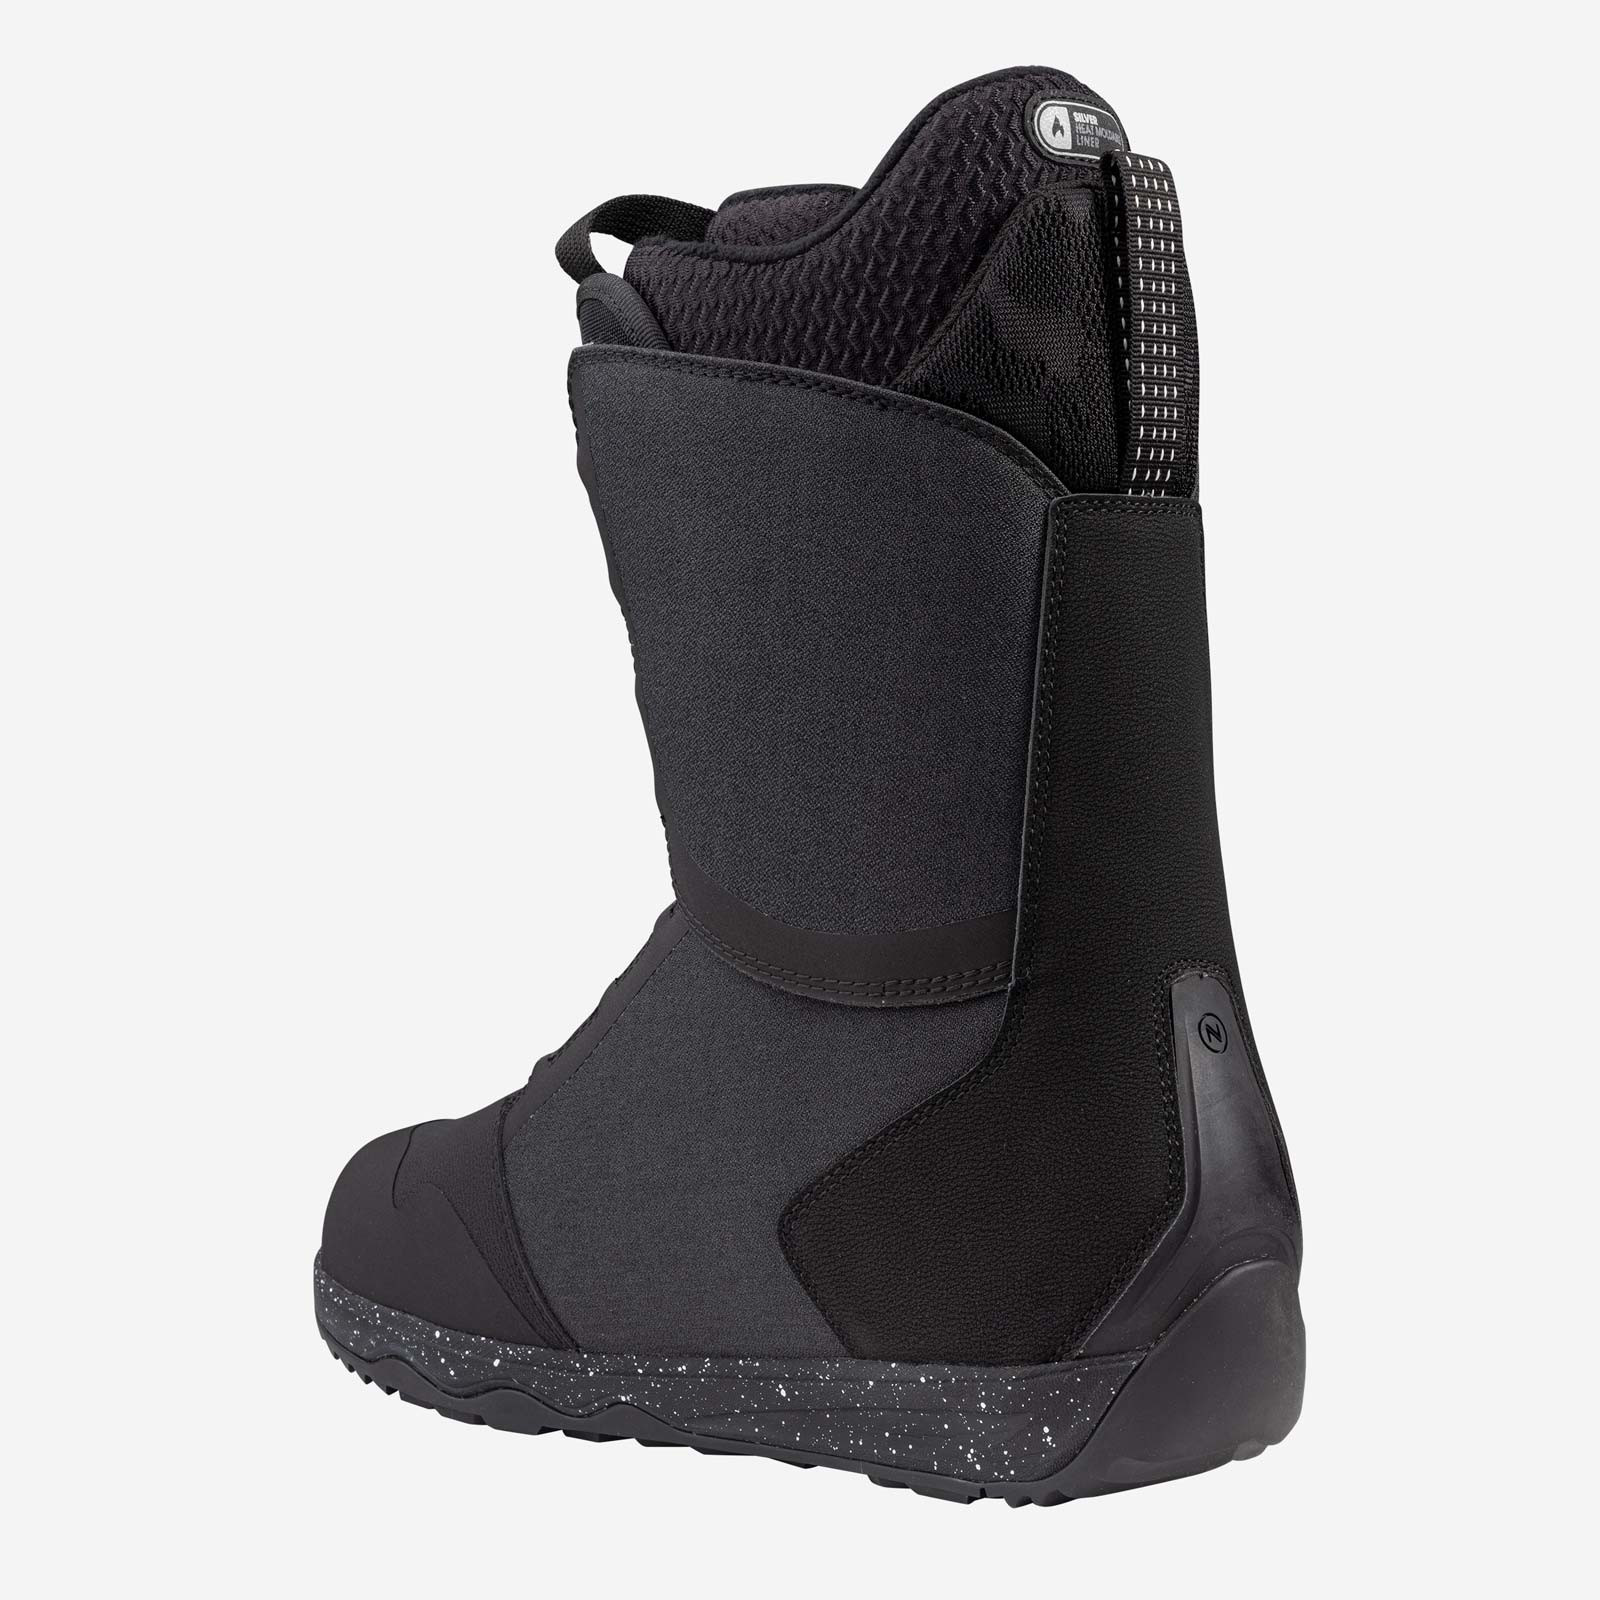 Nidecker Snowboard Boots Rift Black